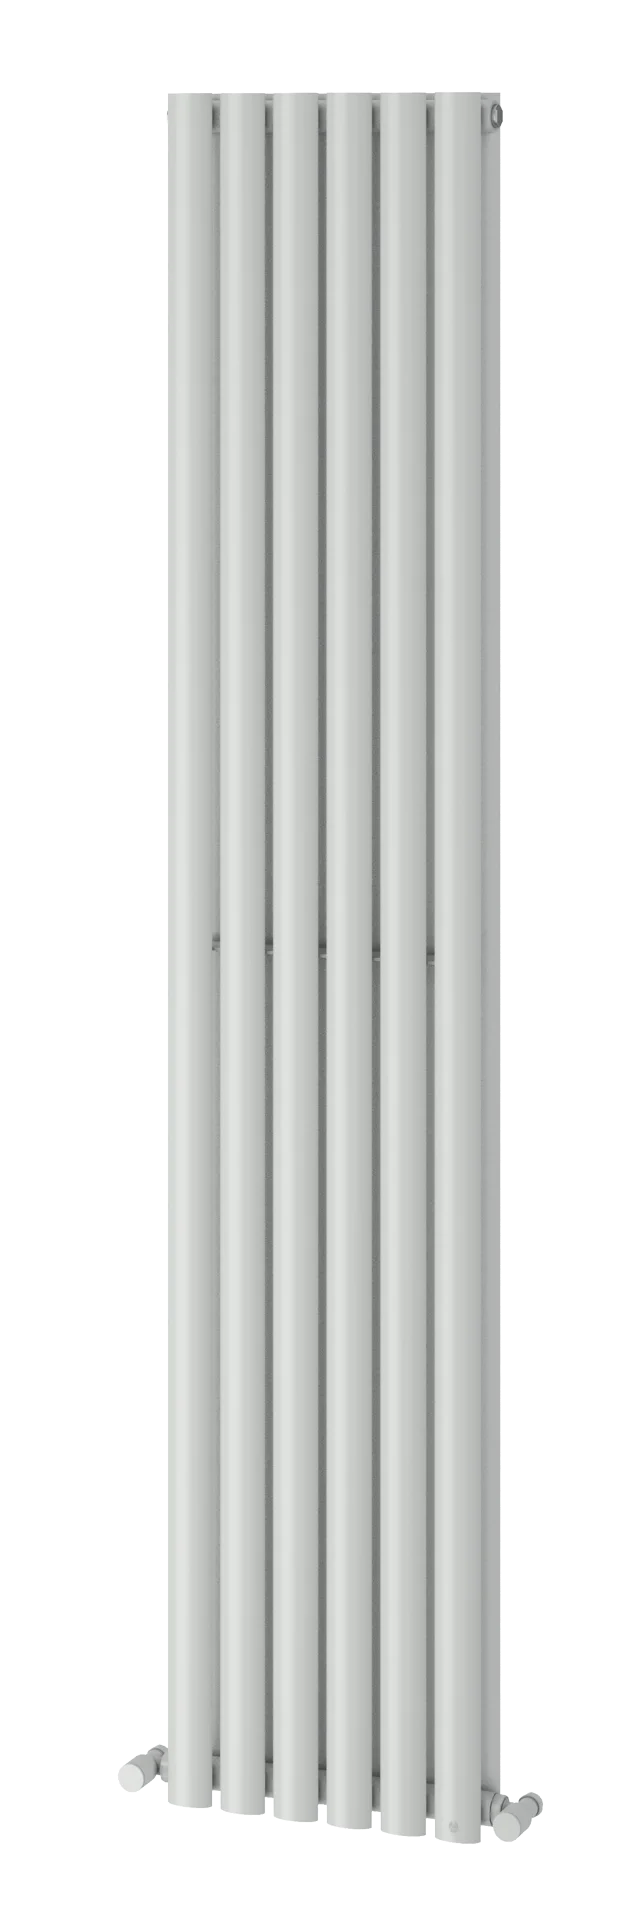 Vertical radiator installation